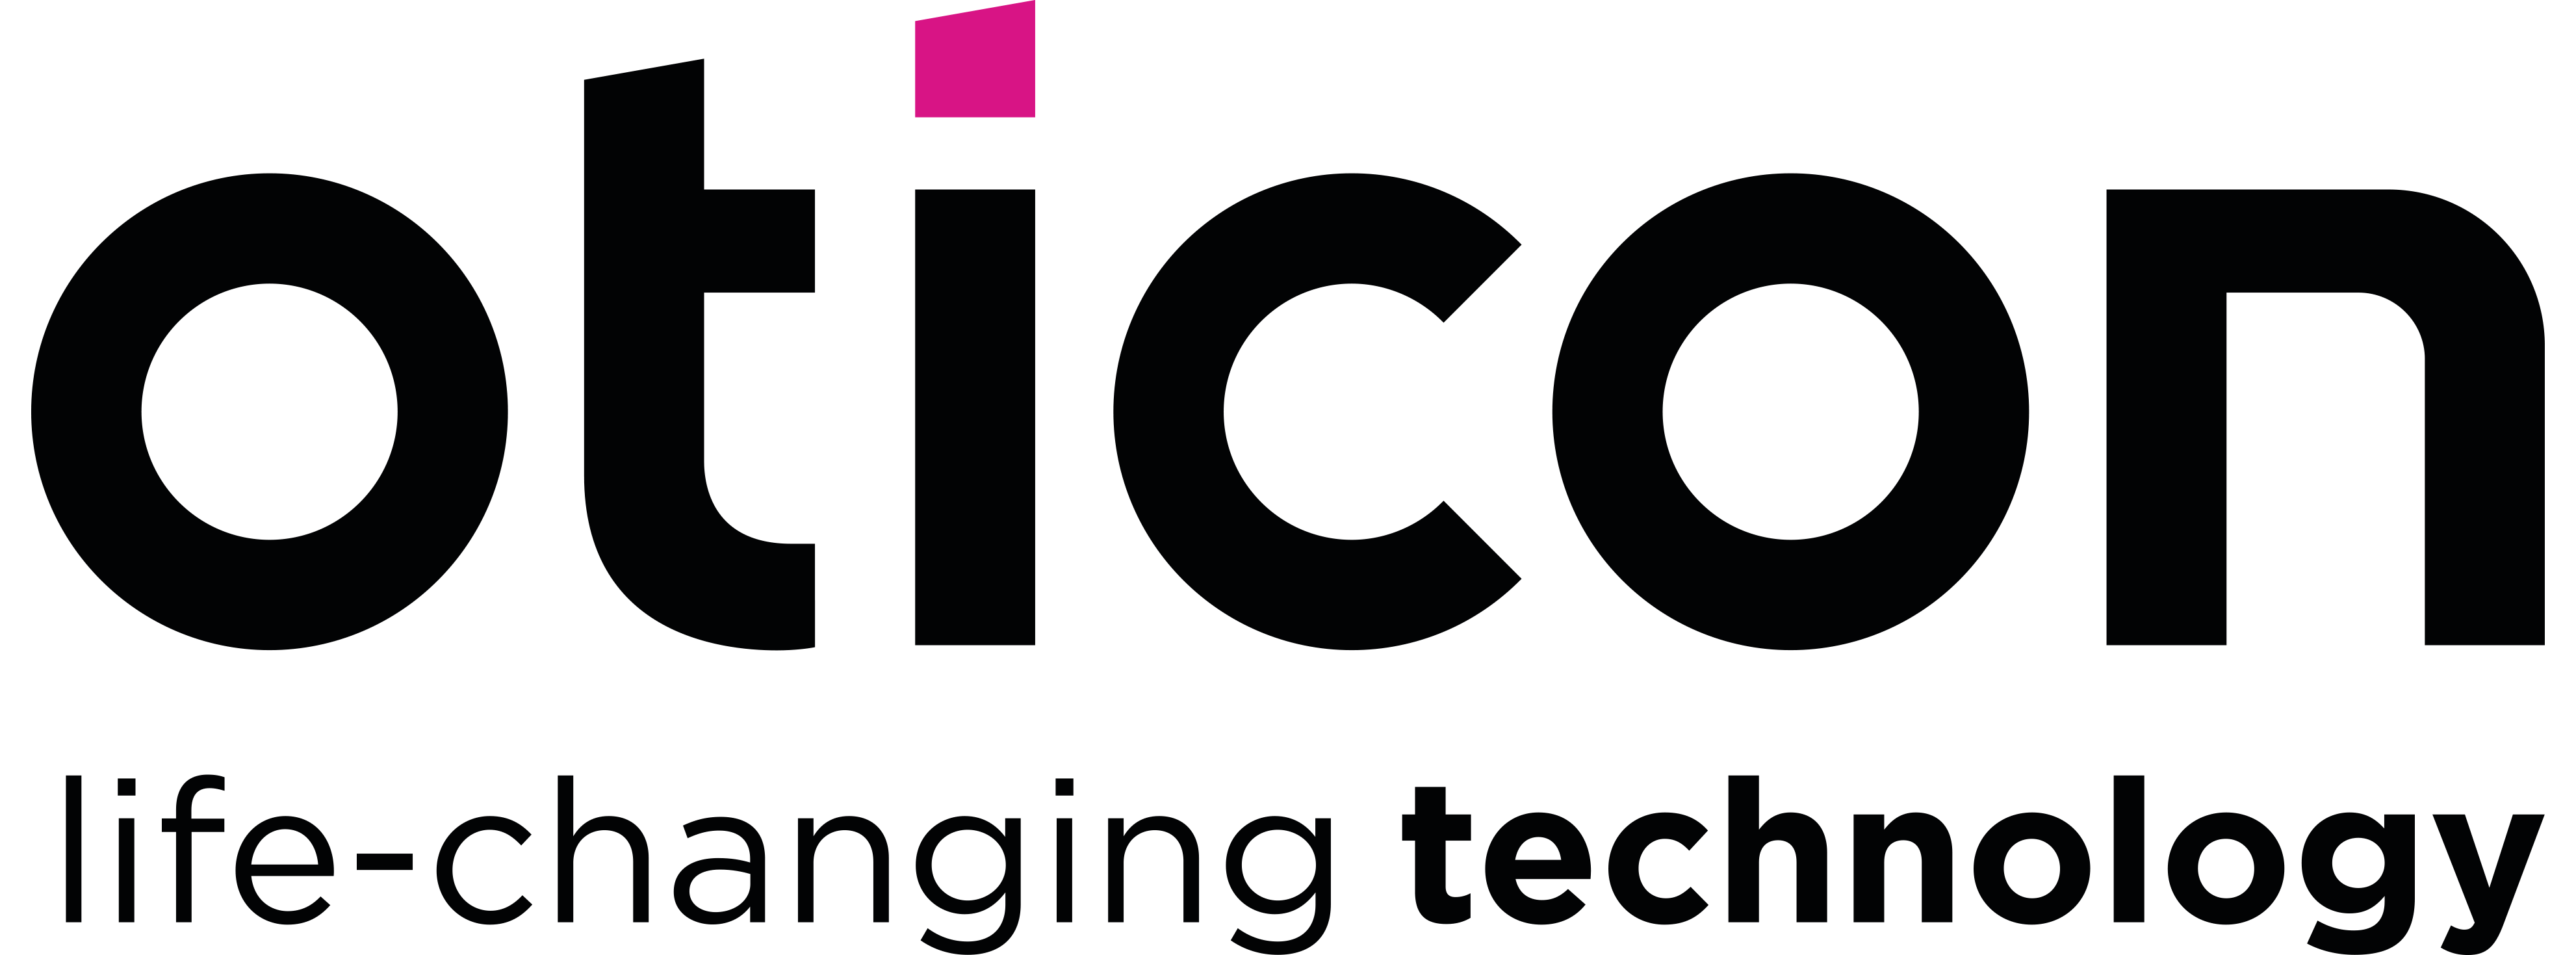 oticon transparent logo